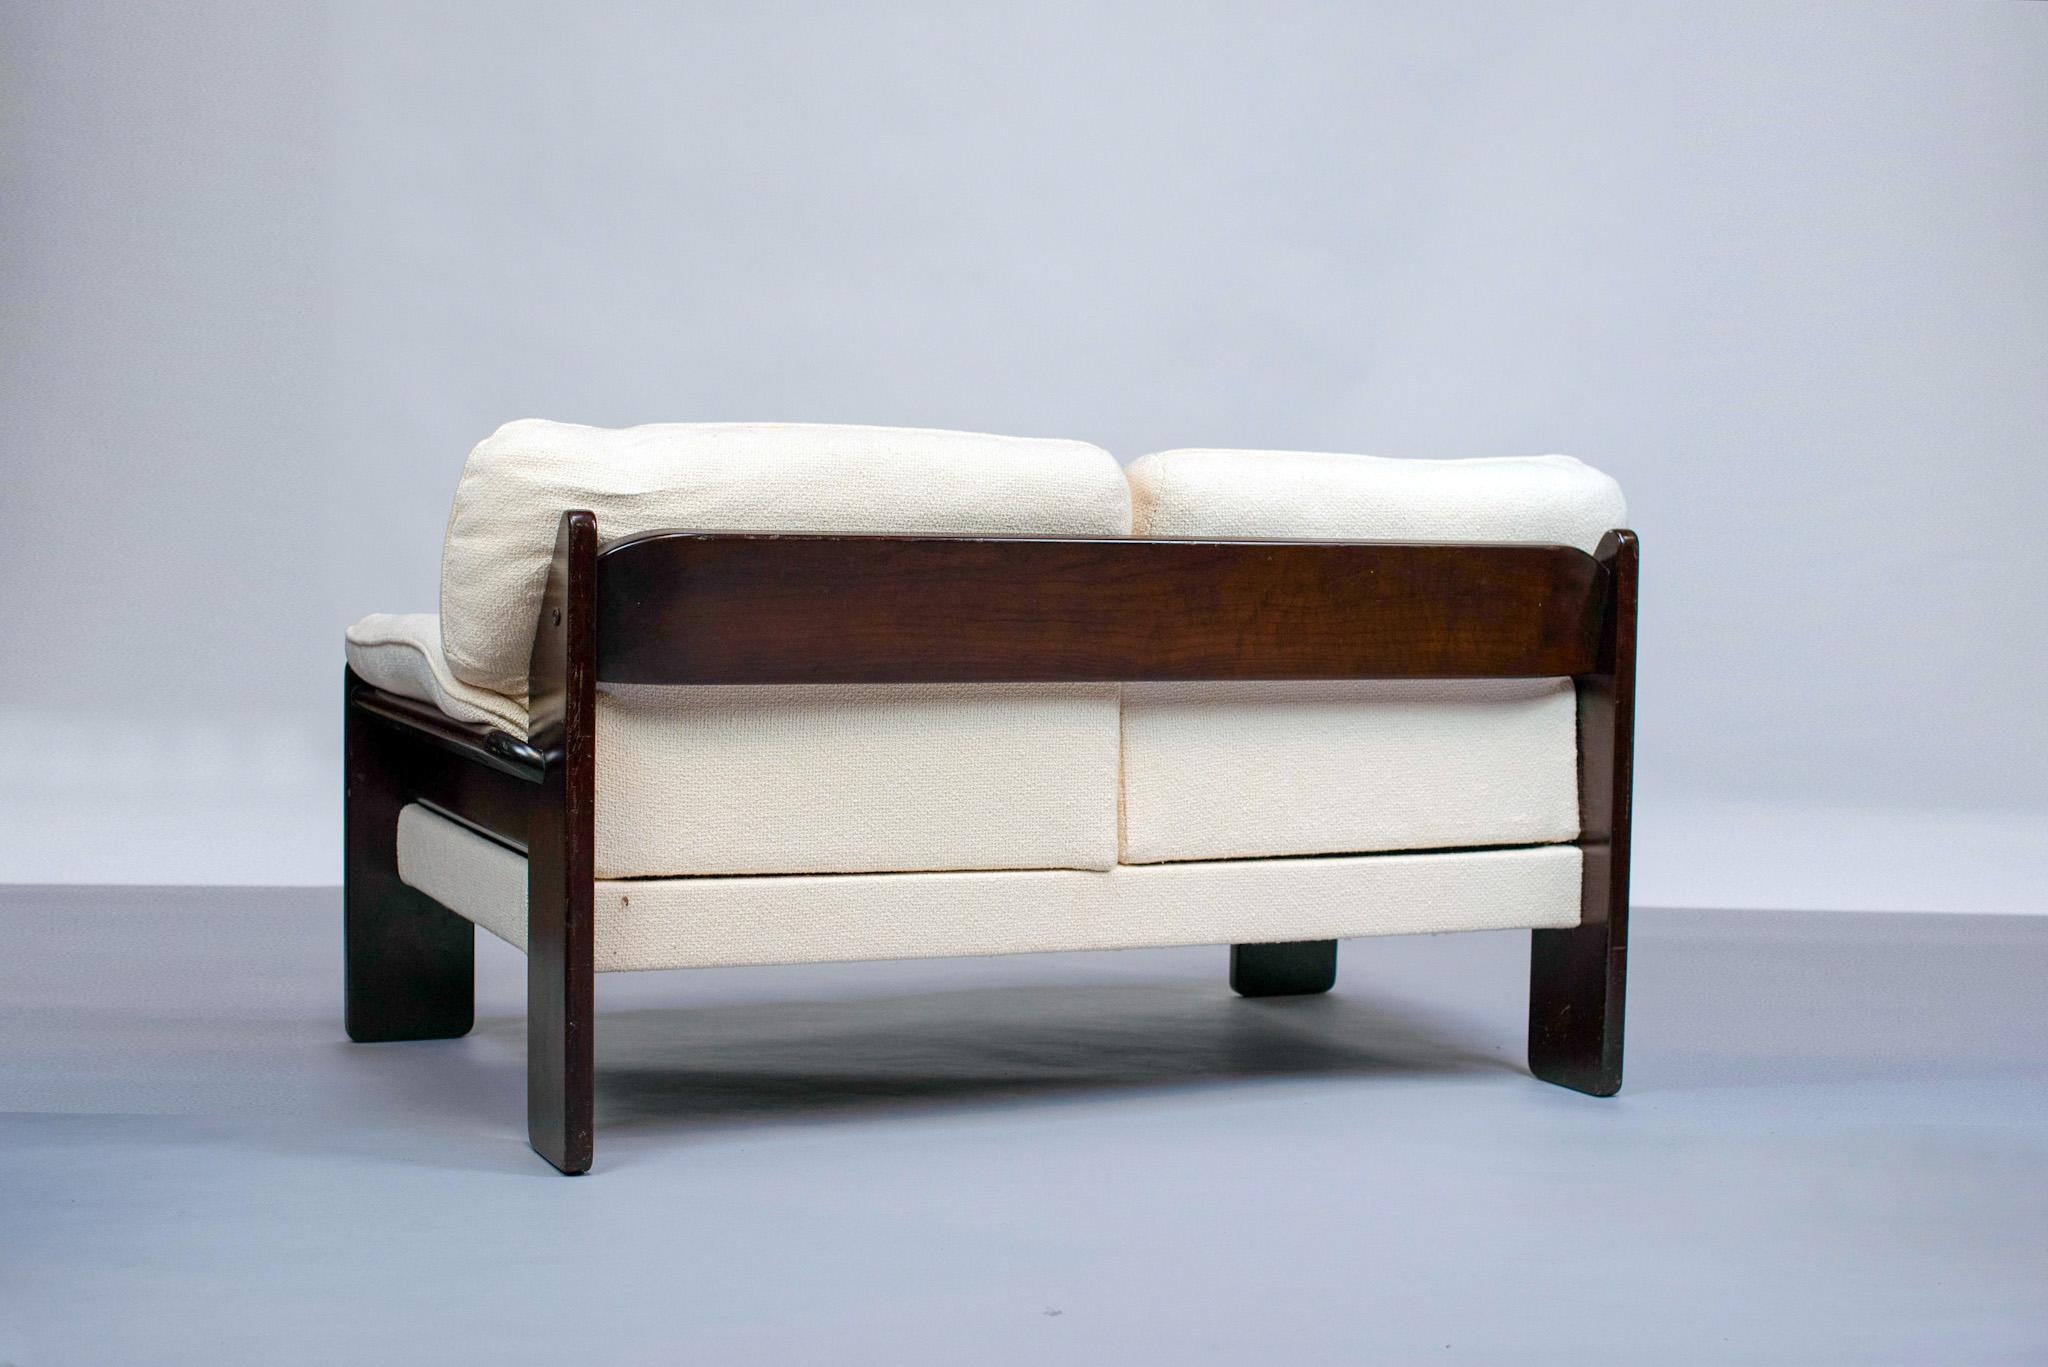 Le canapé 2 places conçu par le designer brésilien Jean Gillon est une pièce élégante et confortable. Il se compose d'un cadre en bois massif, recouvert d'un tissu bouclé en coton blanc. Le tissu est souple et doux au toucher, offrant une expérience